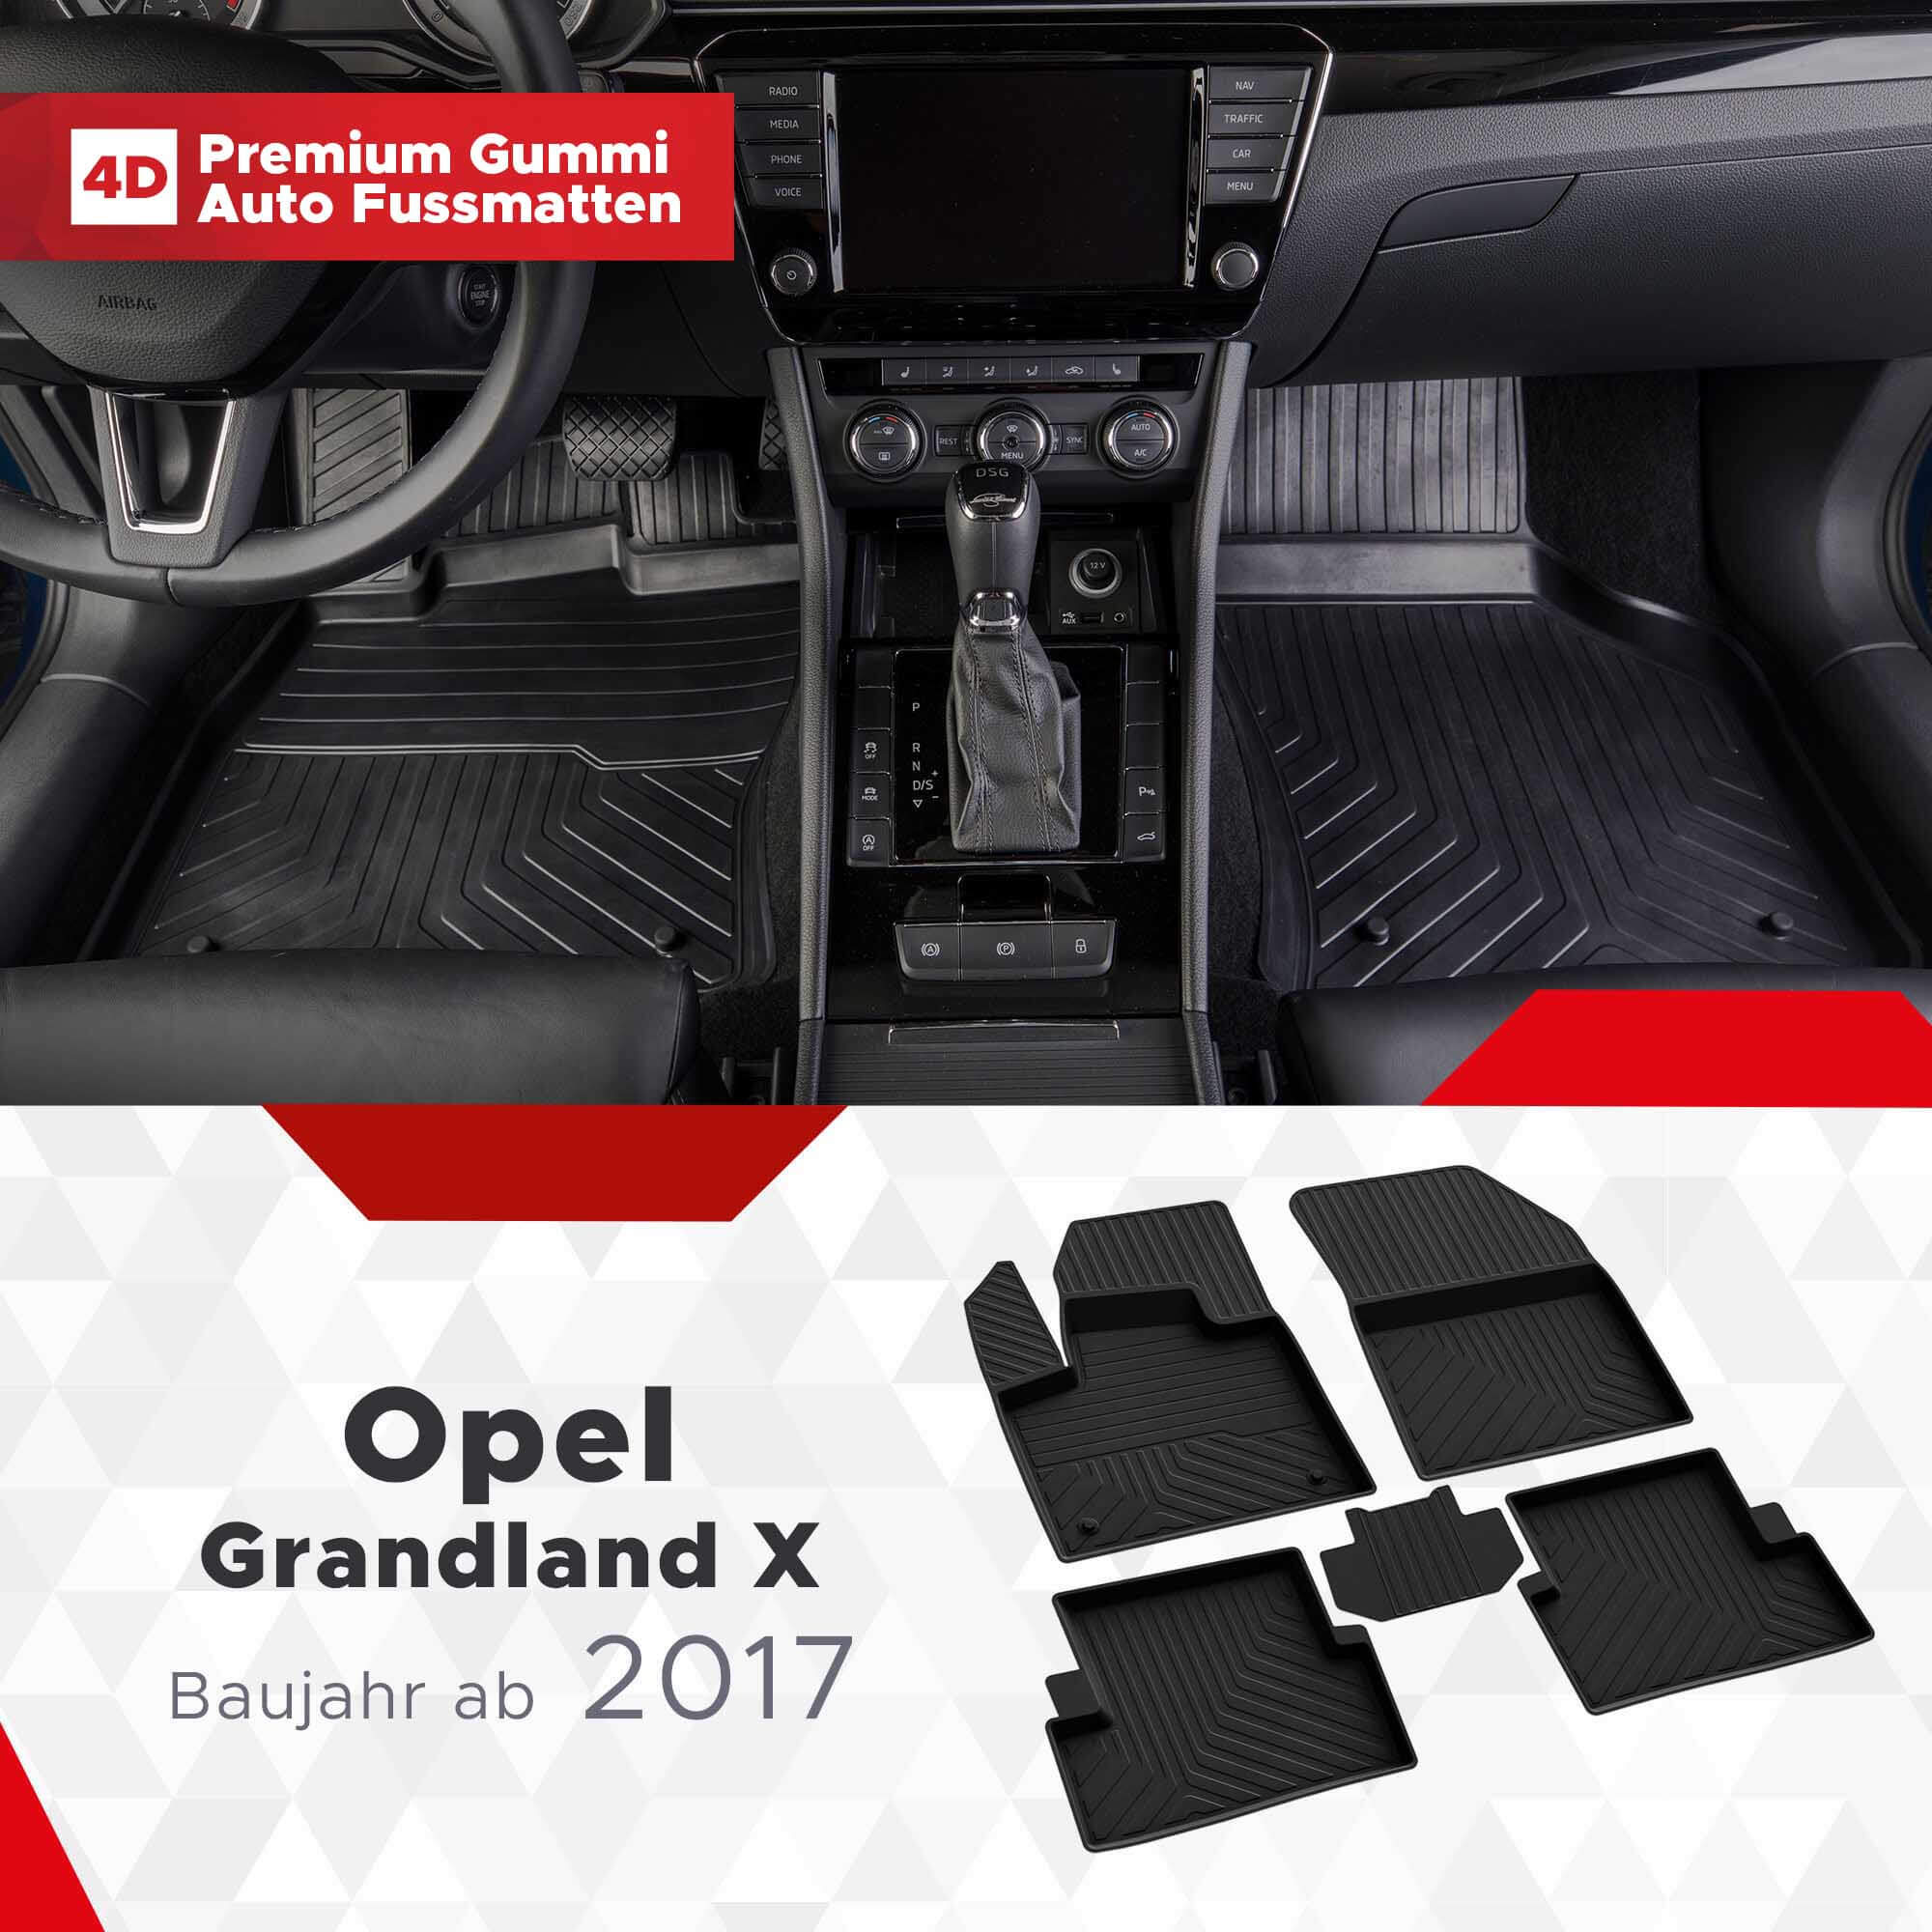 4D Opel Grandland X Fussmatten Bj ab 2017 Gummimatten